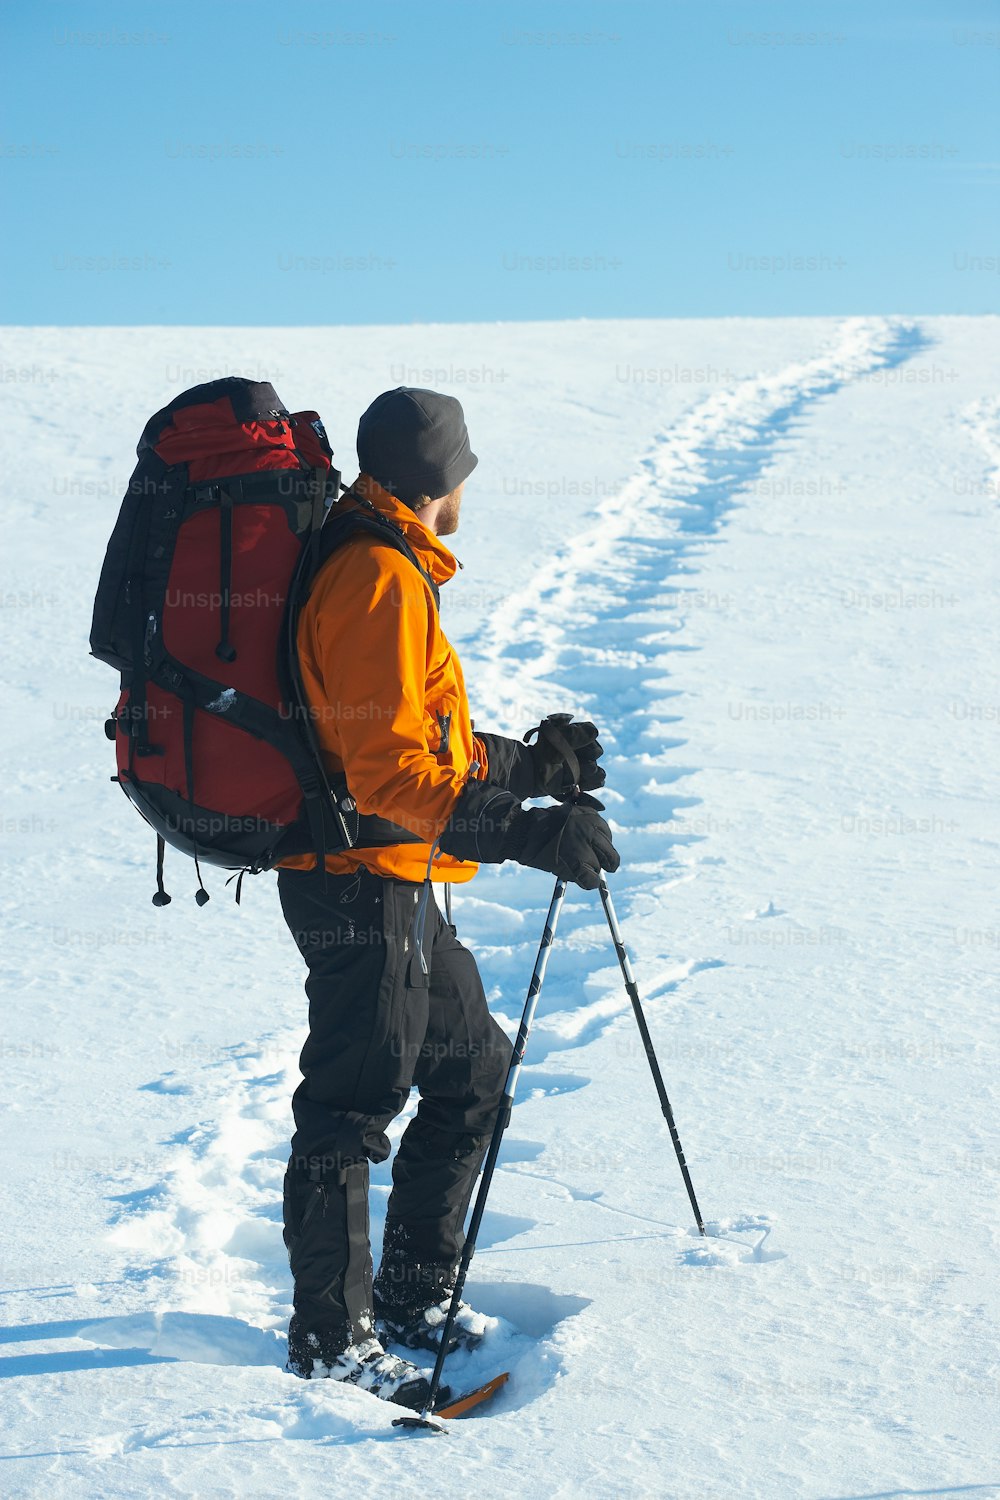 Un homme avec un sac à dos et des skis marchant dans la neige